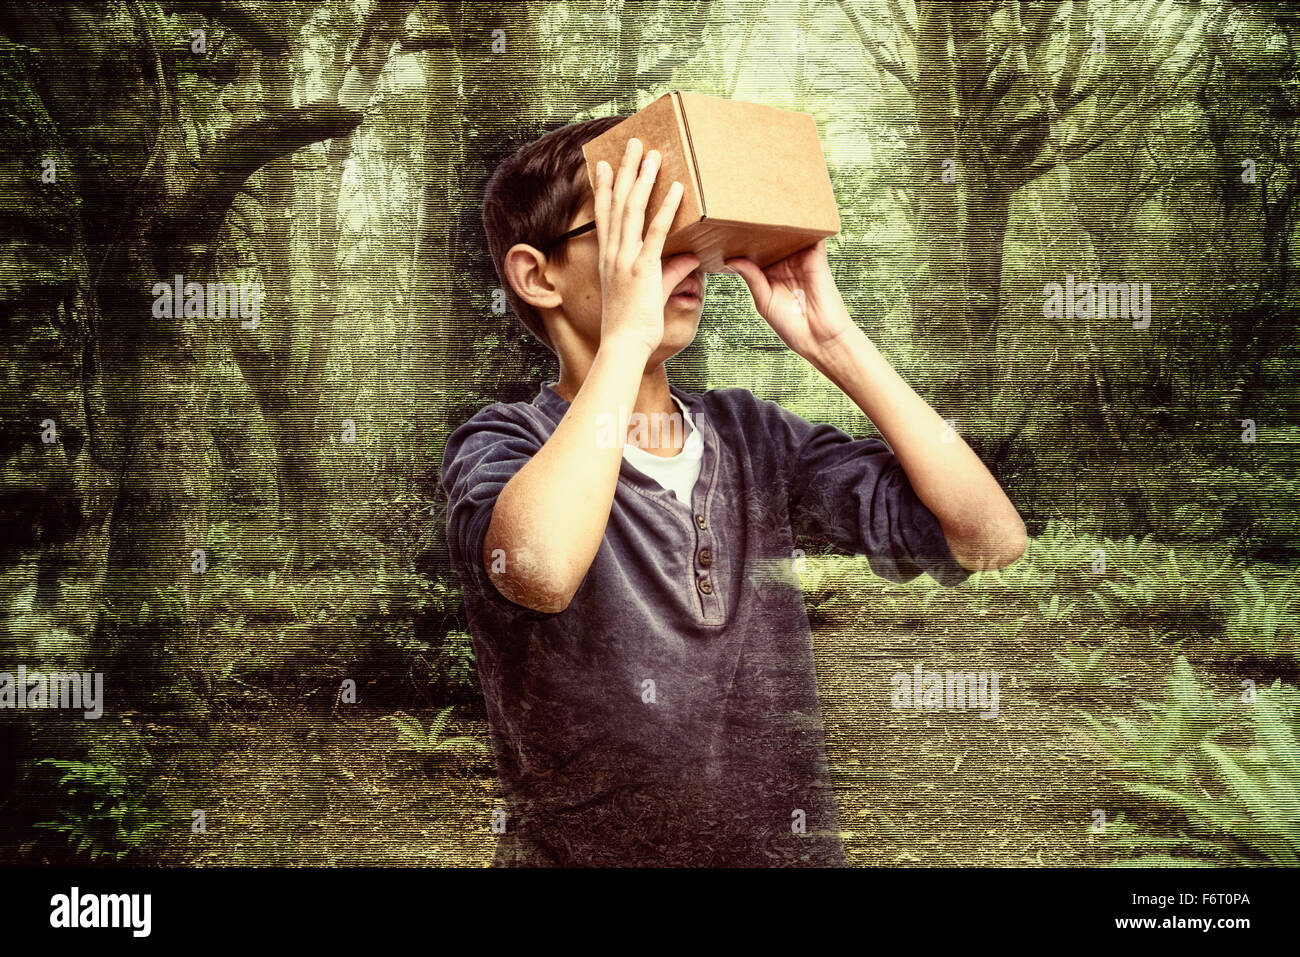 Gemischte Rassen junge peering in Box im Wald Stockfoto